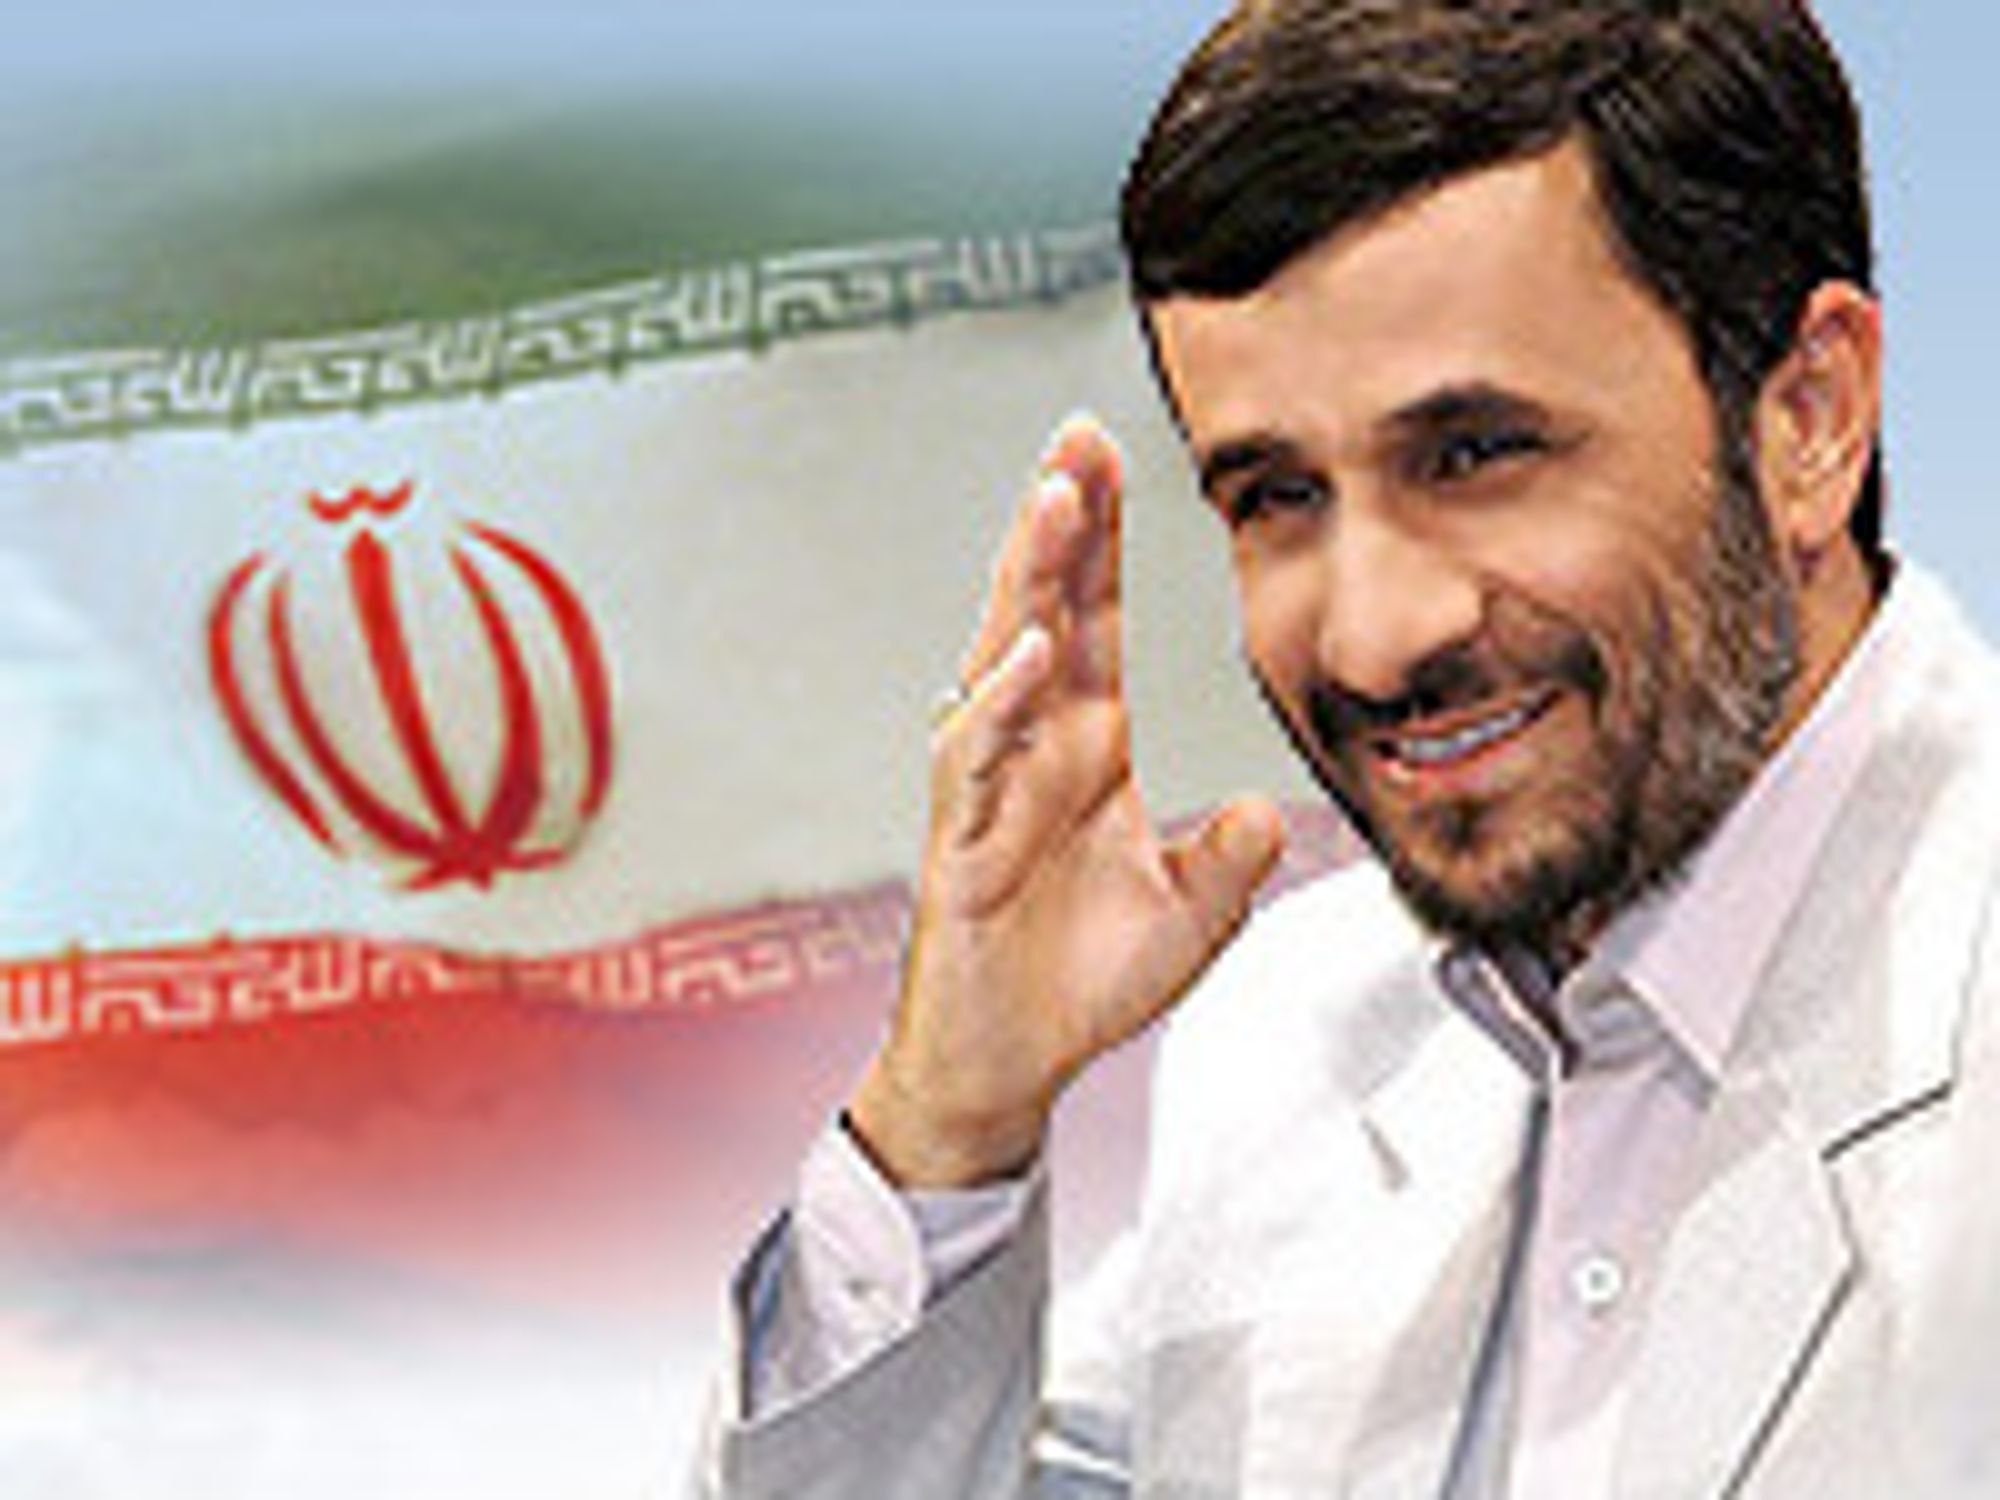 Irans president Mahmoud Ahmadinejad bekrefter datasabotasje mot landets atomanlegg, men nevner ikke Stuxnet ved navn.